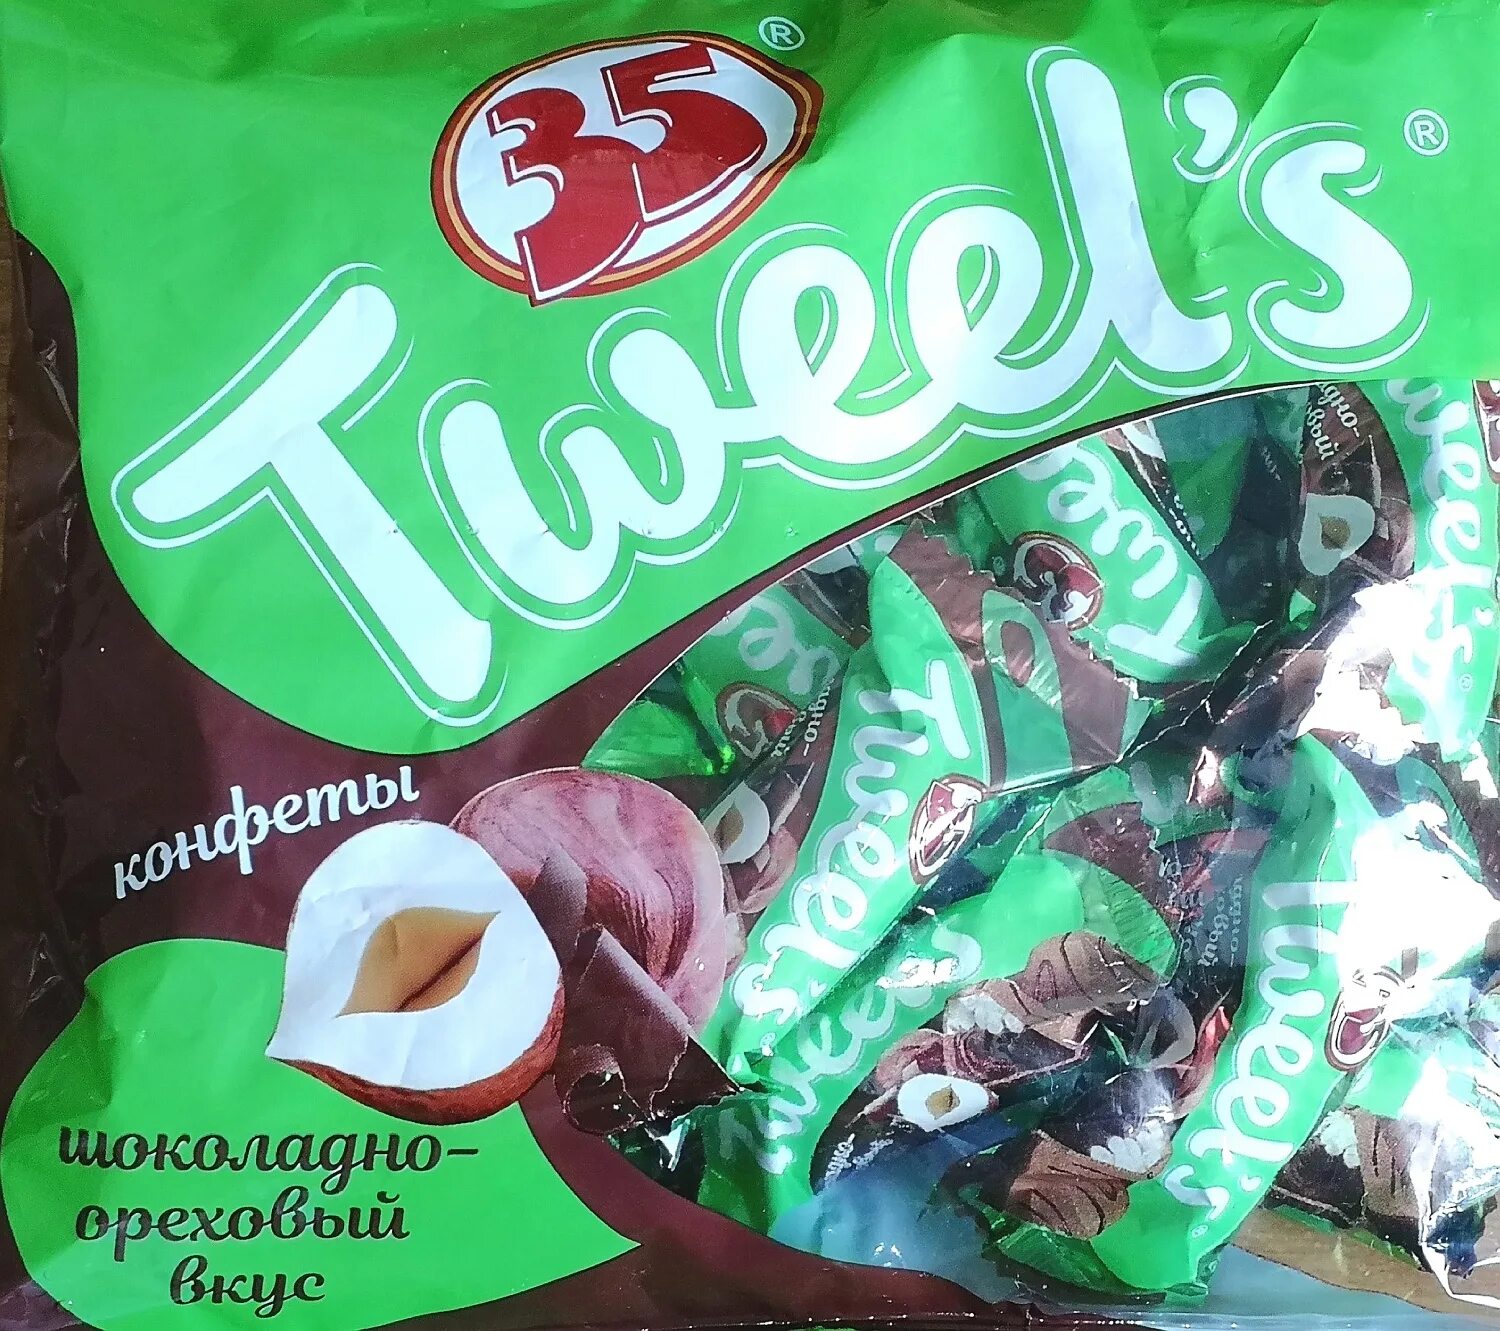 Шоколадно ореховые конфеты. Эссен продакшн конфеты. 35 Tweels конфеты. Конфеты "35" Tweel's шоколадно-Ореховый вкус.